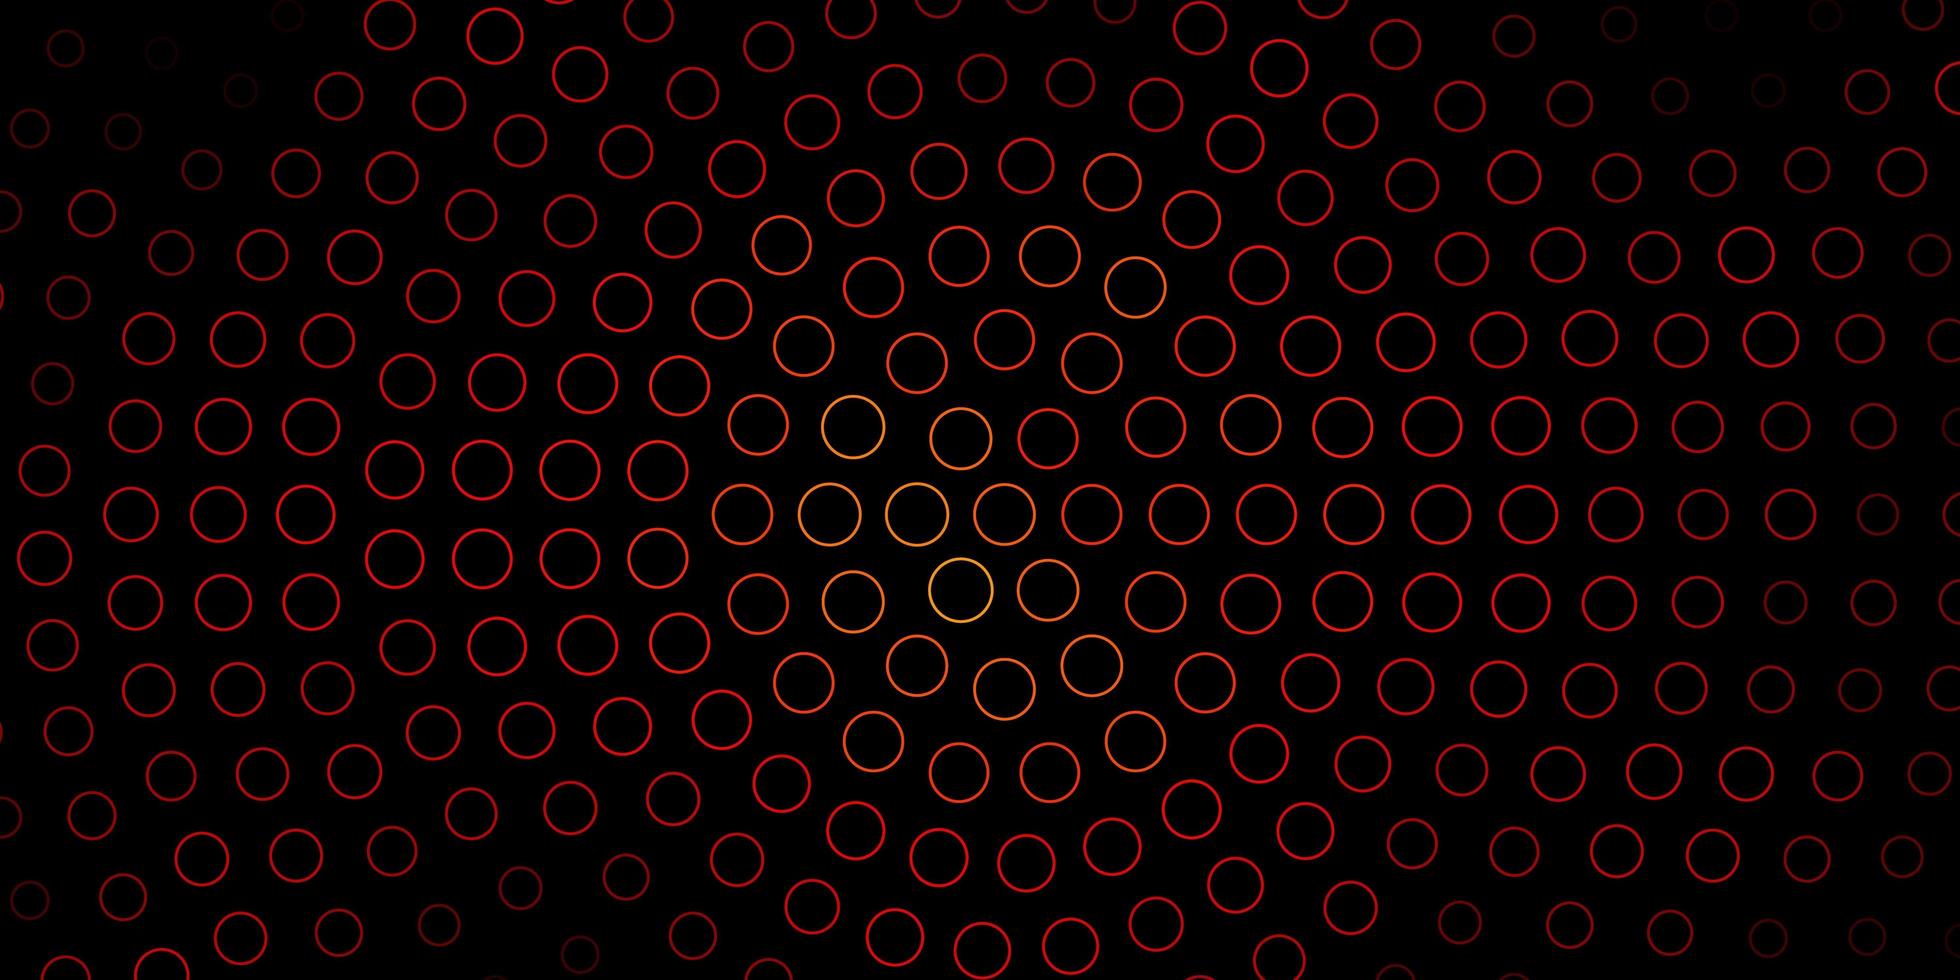 fundo vector vermelho escuro com círculos.